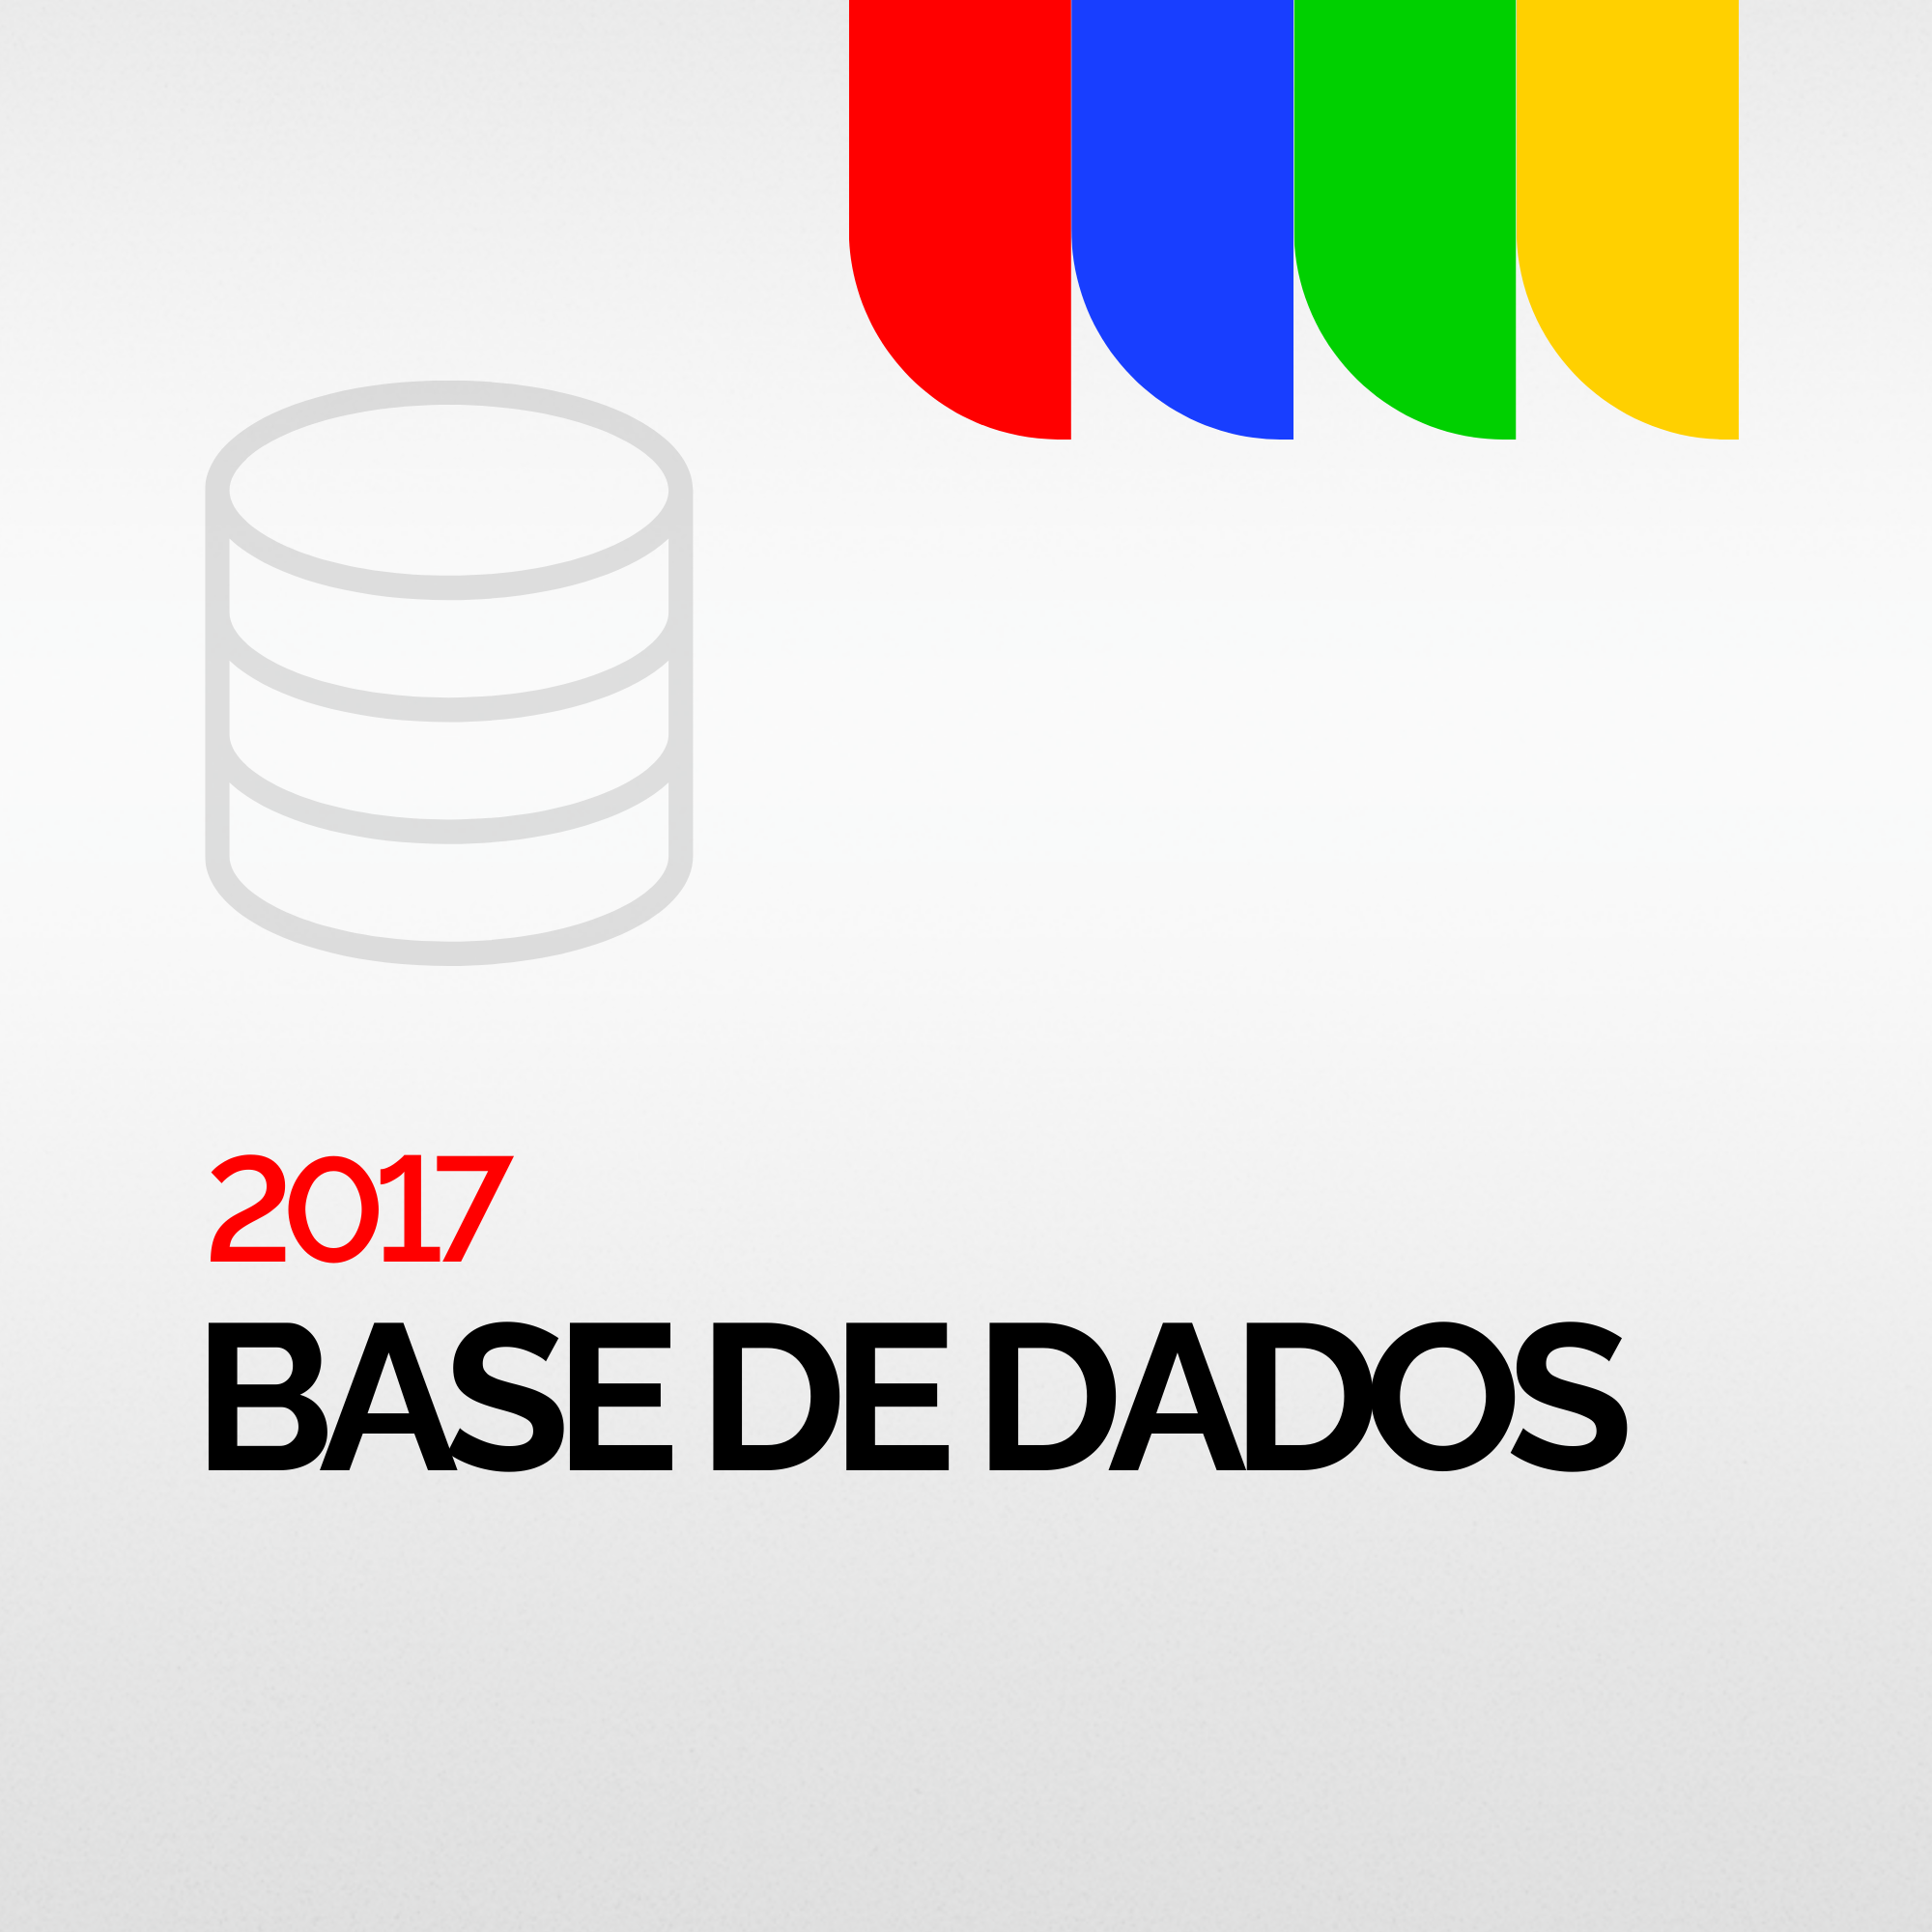 BASE DE DADOS 2017